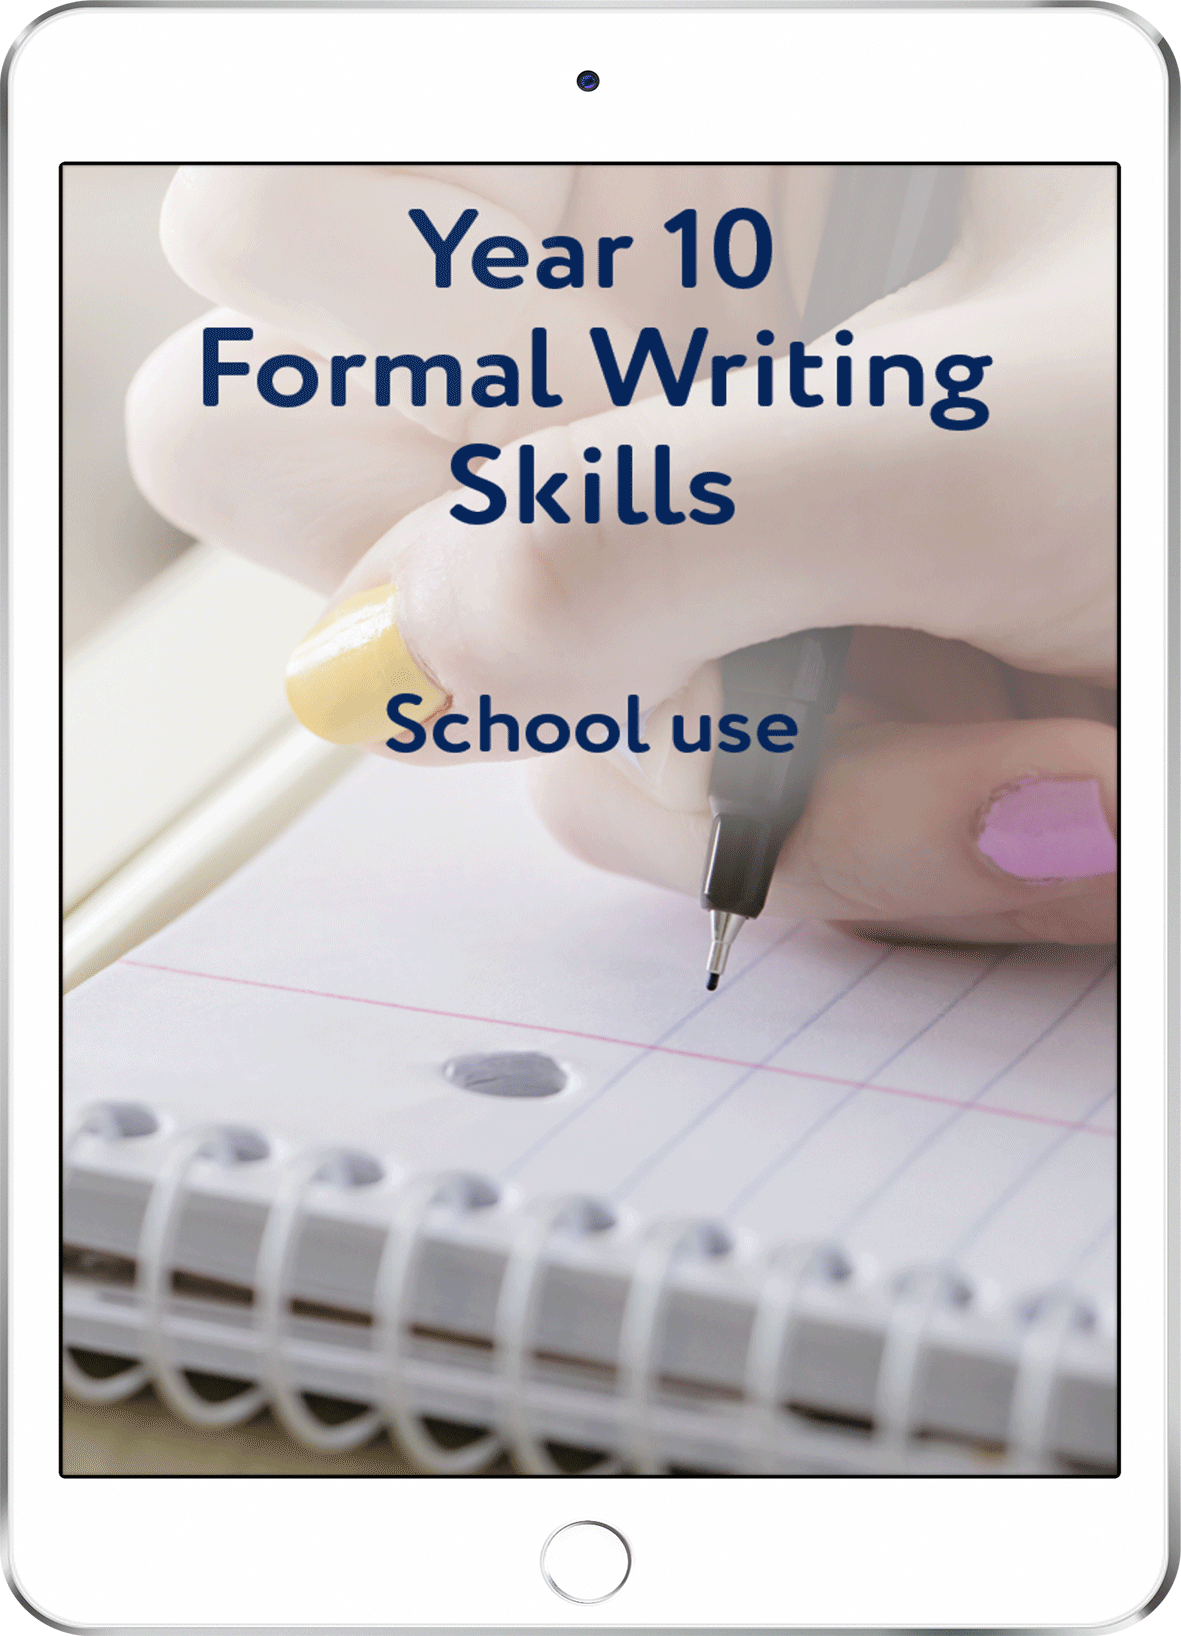 Year 10 Formal Writing Skills - School Use